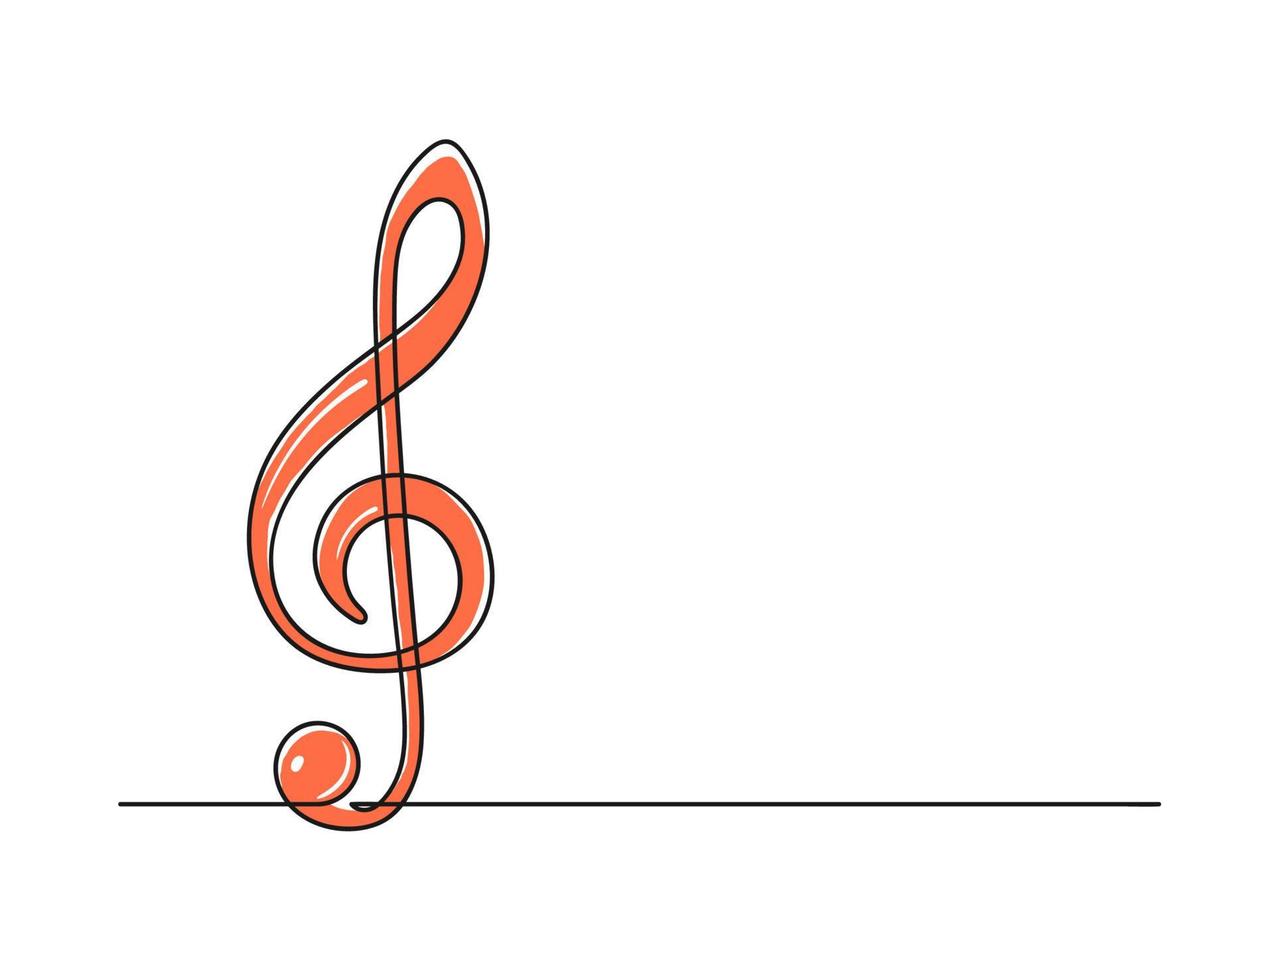 fortlaufende einzeilige Zeichnung eines Violinschlüssels vektor